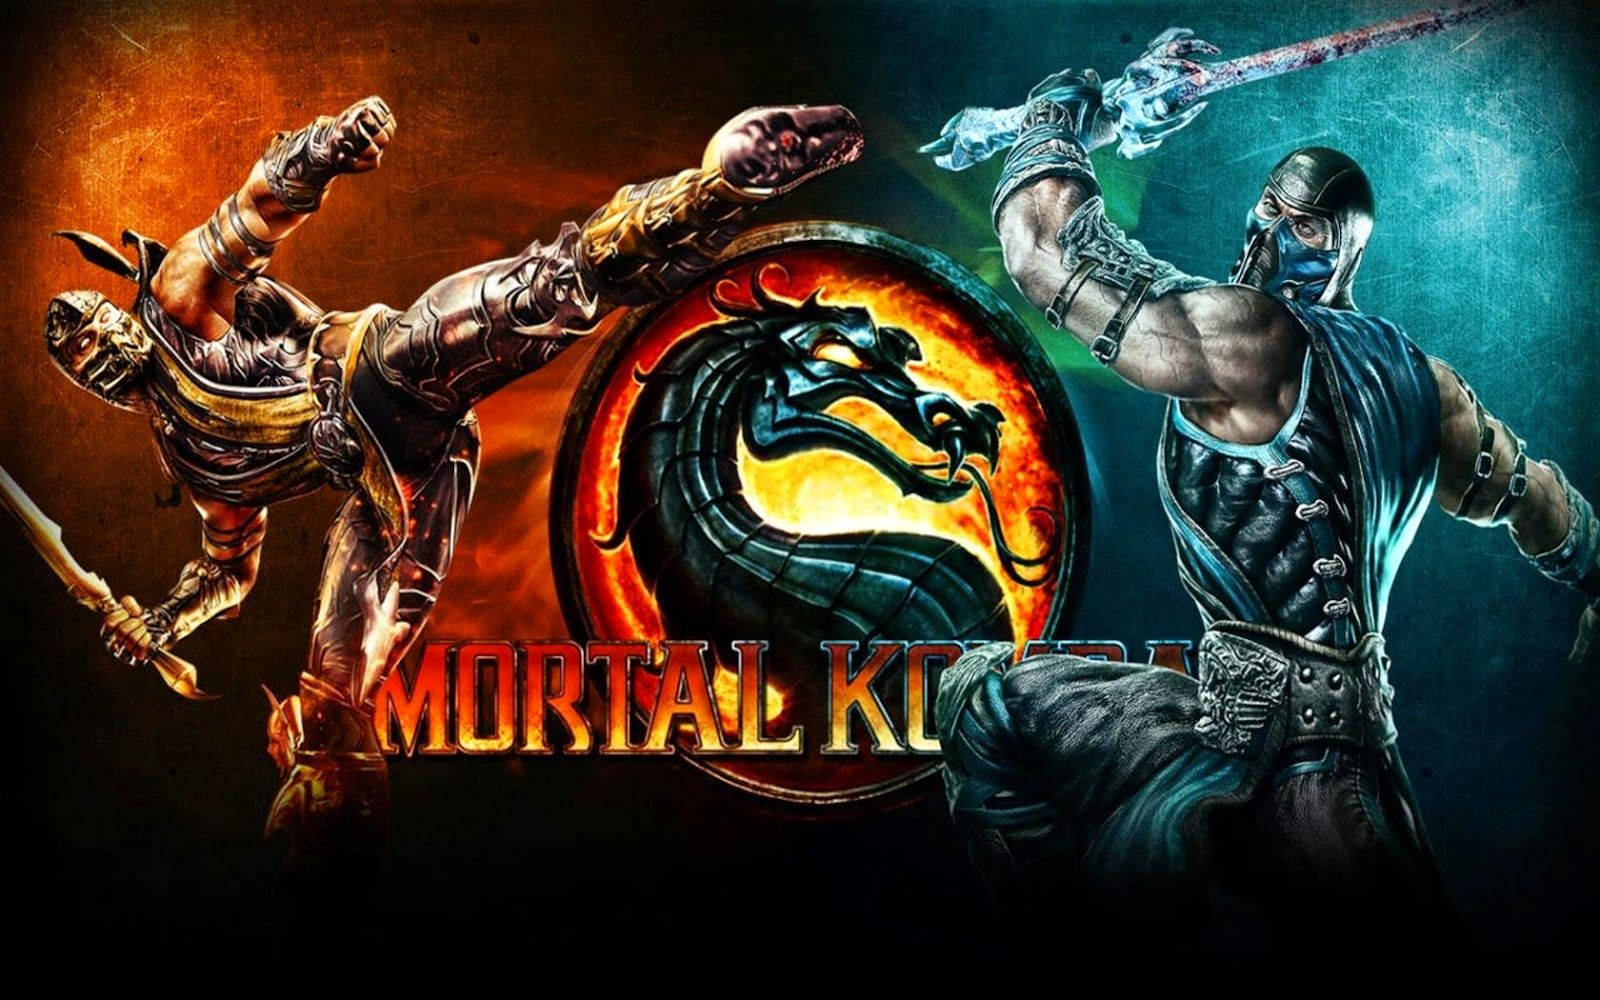 Mortal Kombat Scorpion And Subzero Poster